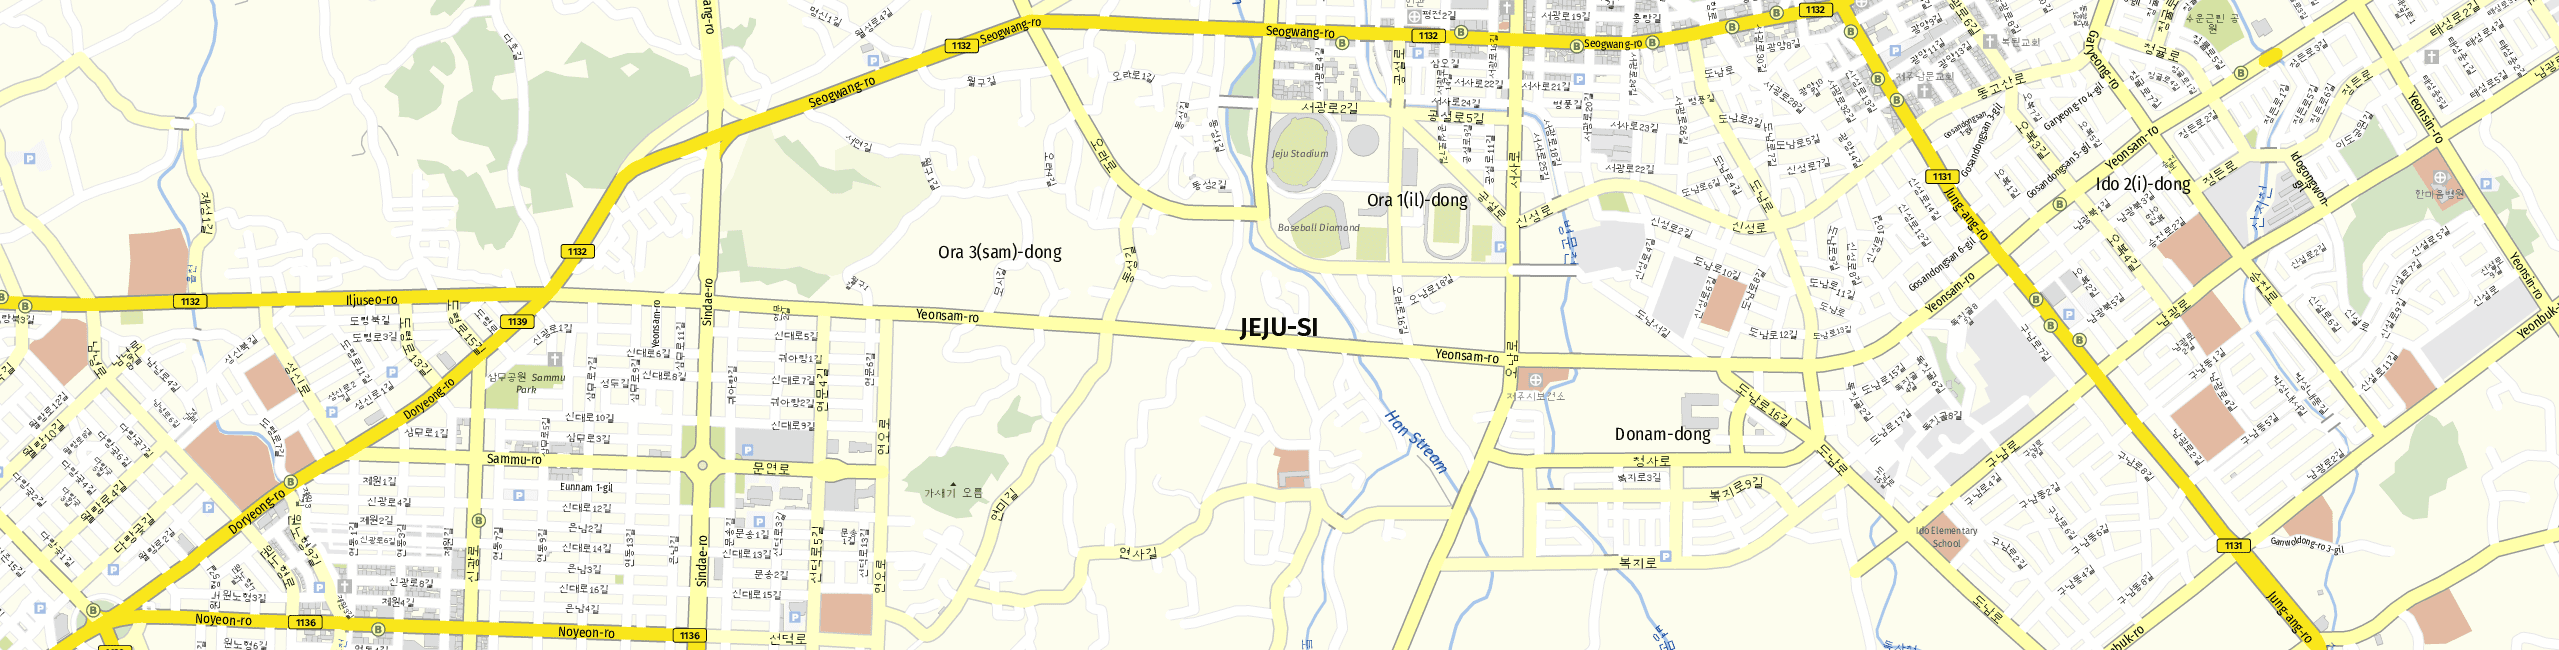 Stadtplan Jeju zum Downloaden.